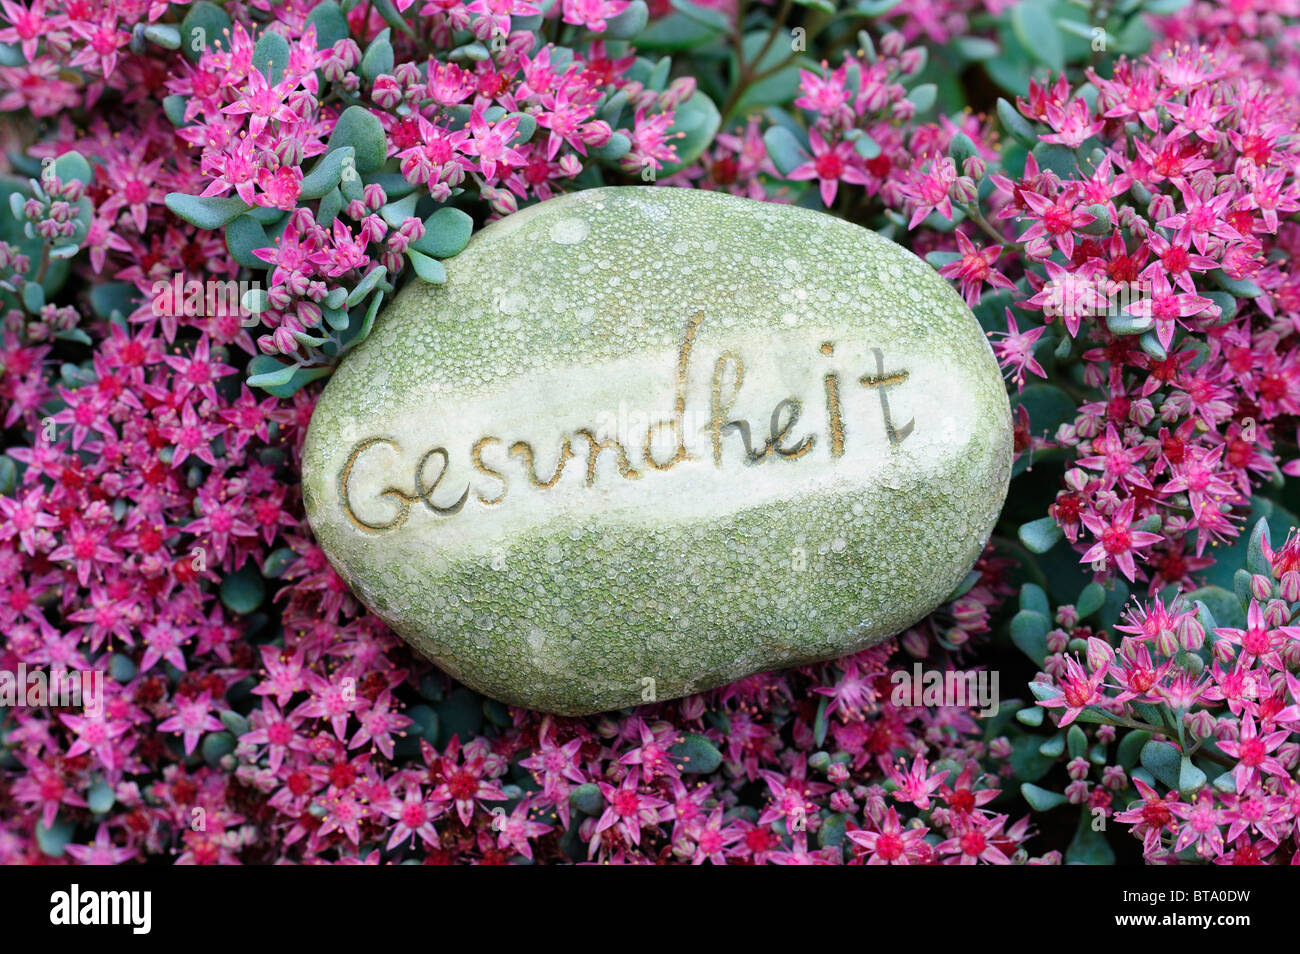 La piedra con la palabra "Gesundheit', 'salud' como un jardín decoración en un lecho de flores Foto de stock